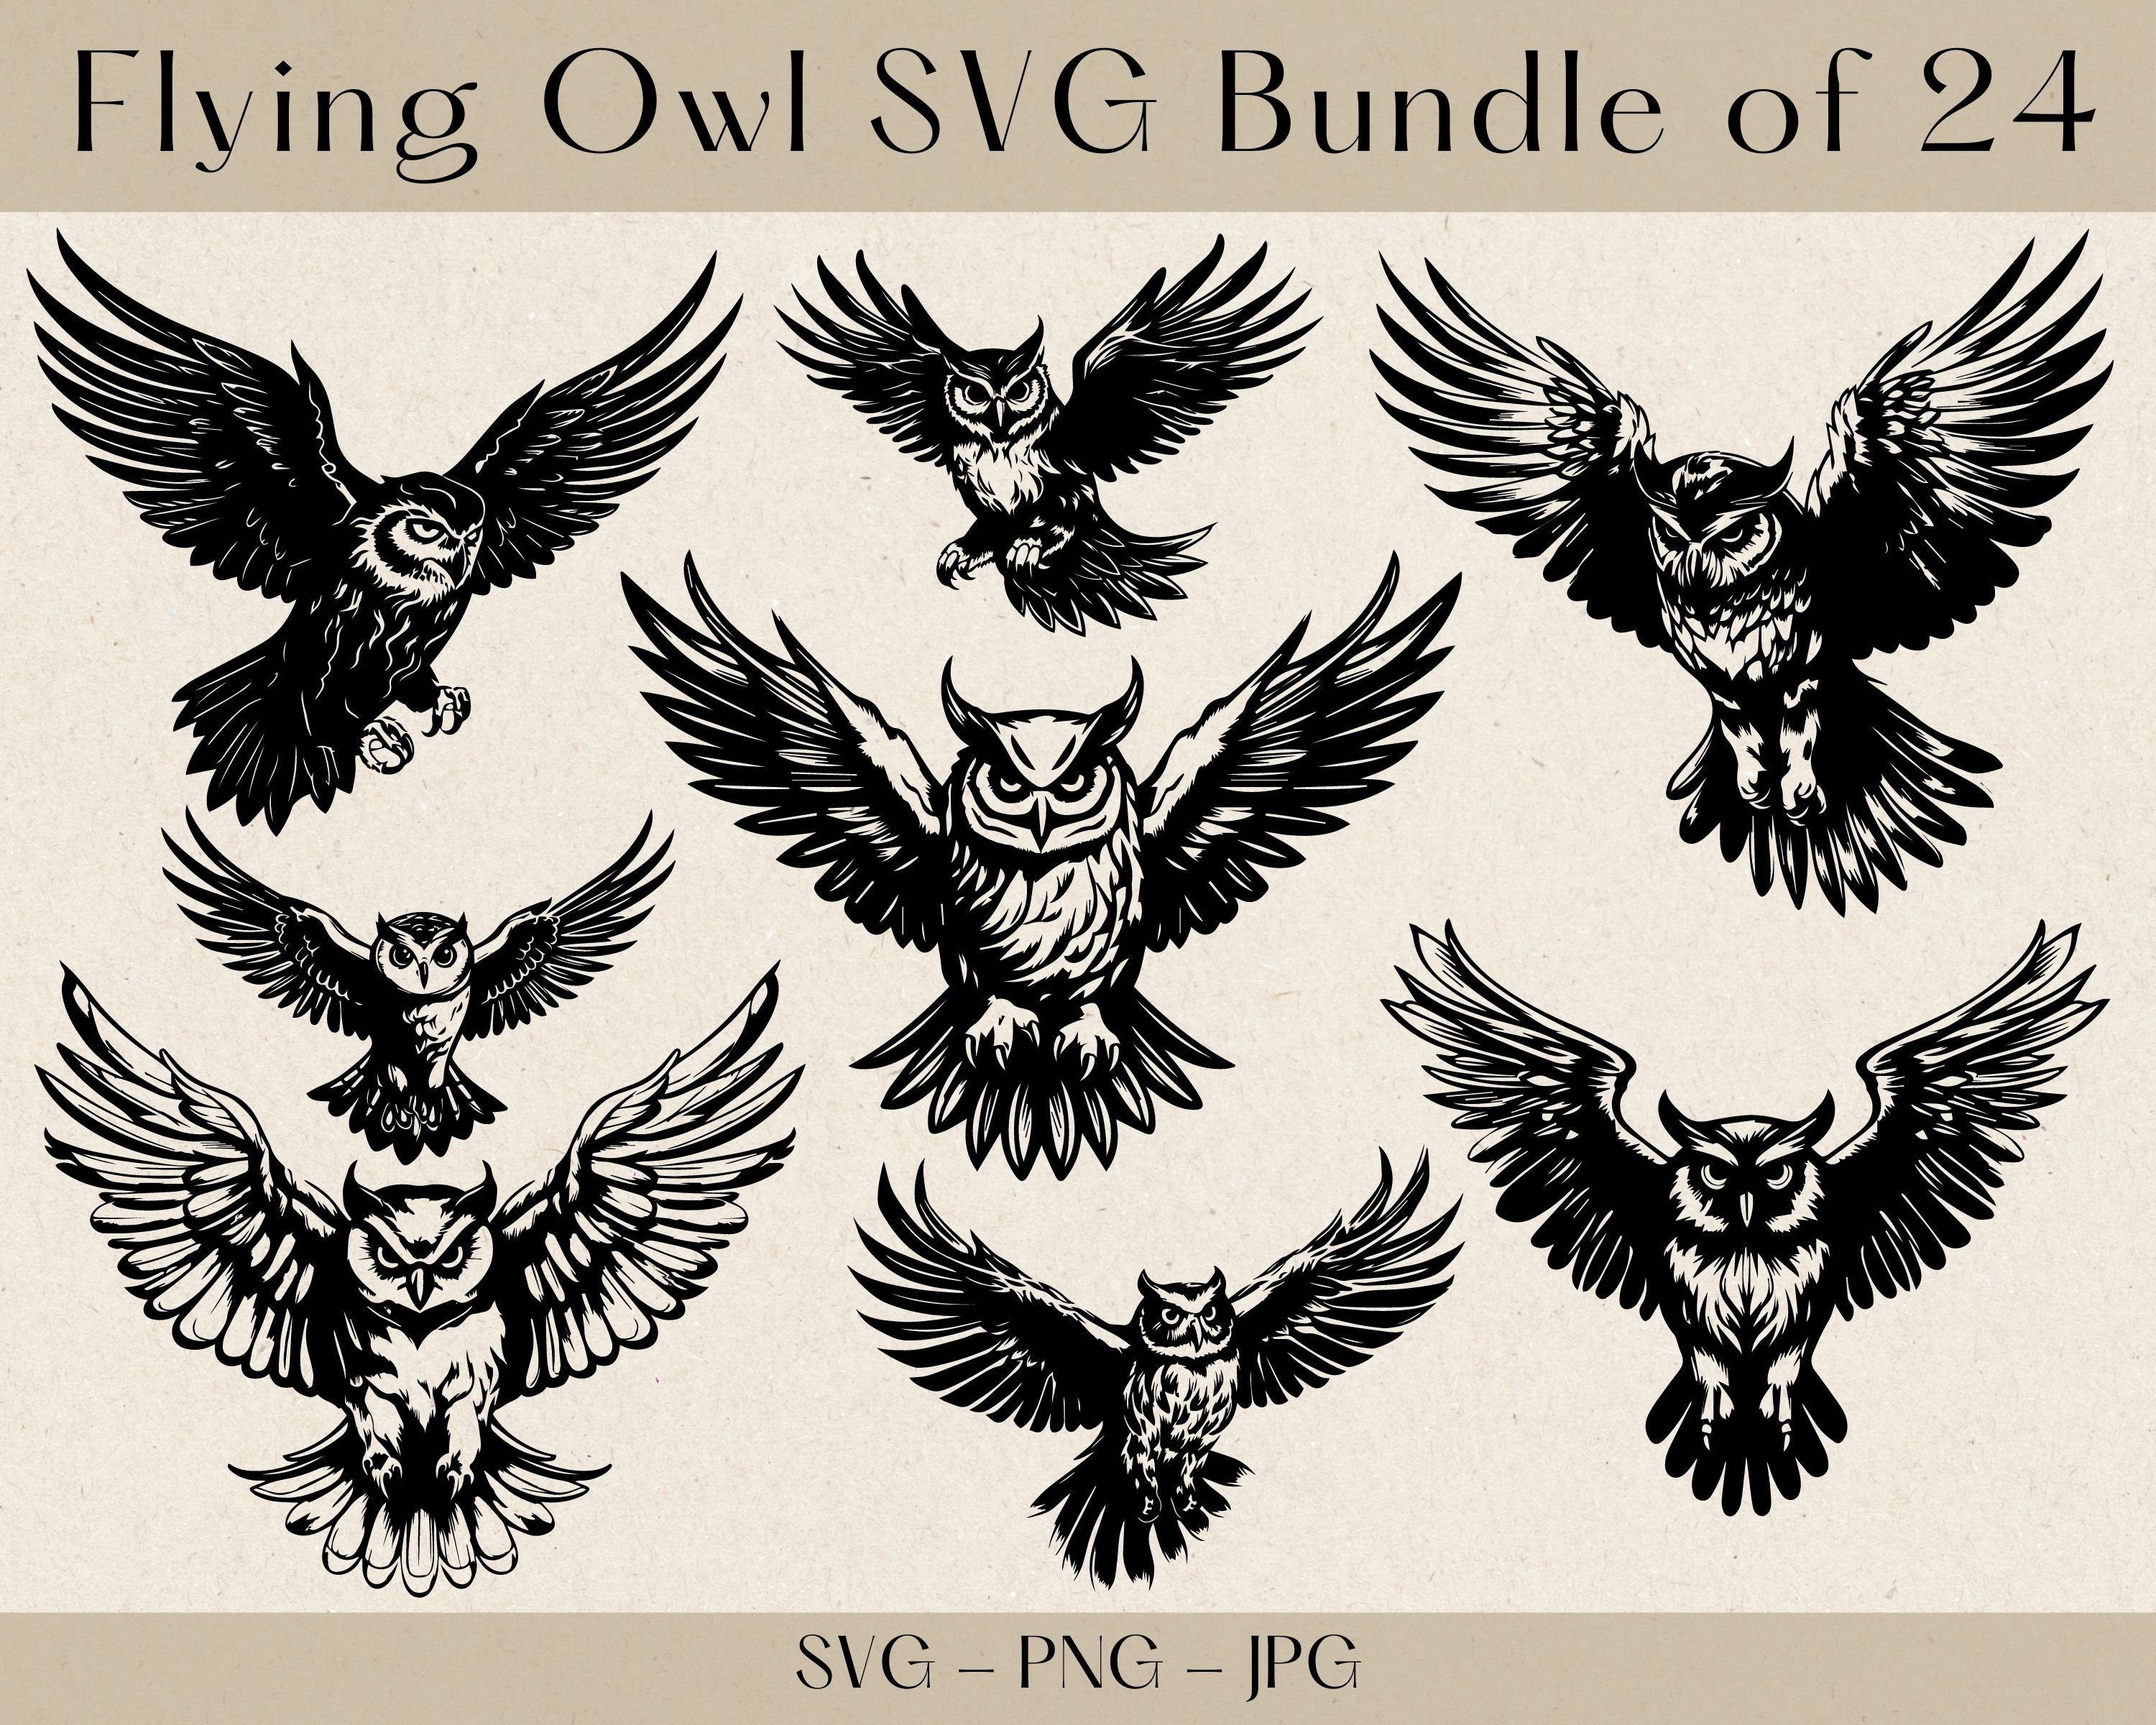 Flying Owl SVG Bundle, Flying owl svg, Owl svg, Owl svg bundle, Owl Clipart, Owl Png, Bird SVG, Owl 